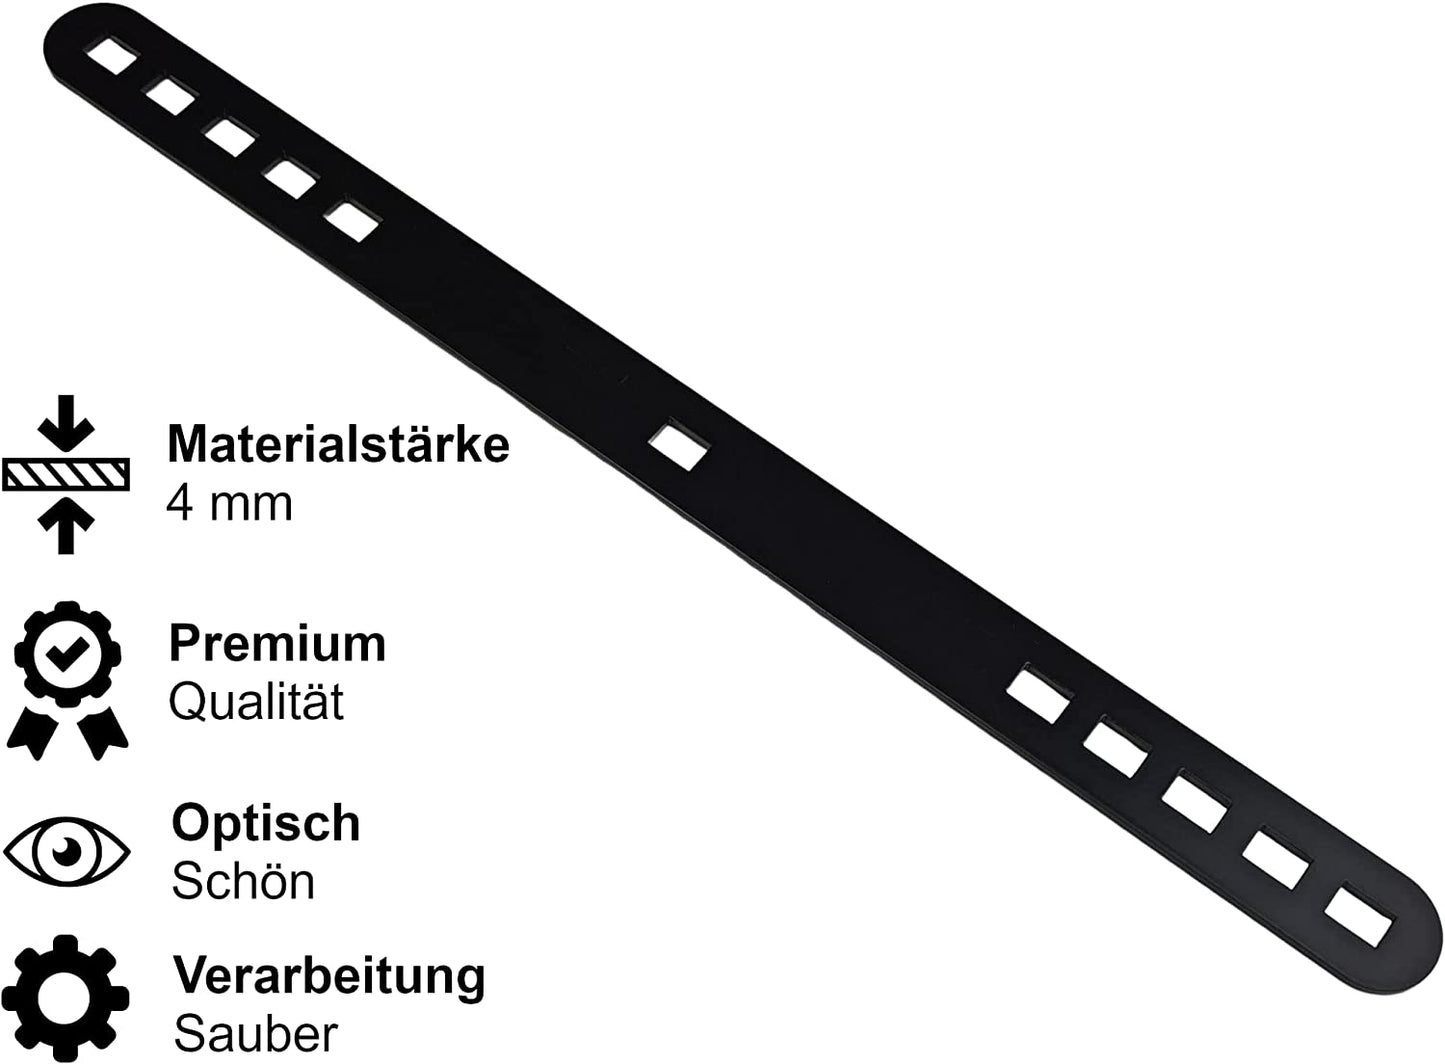 4 mm Dicke Stahl Flachverbinder Lochplatte Holzverbinder, Metallverbinder in schwarz